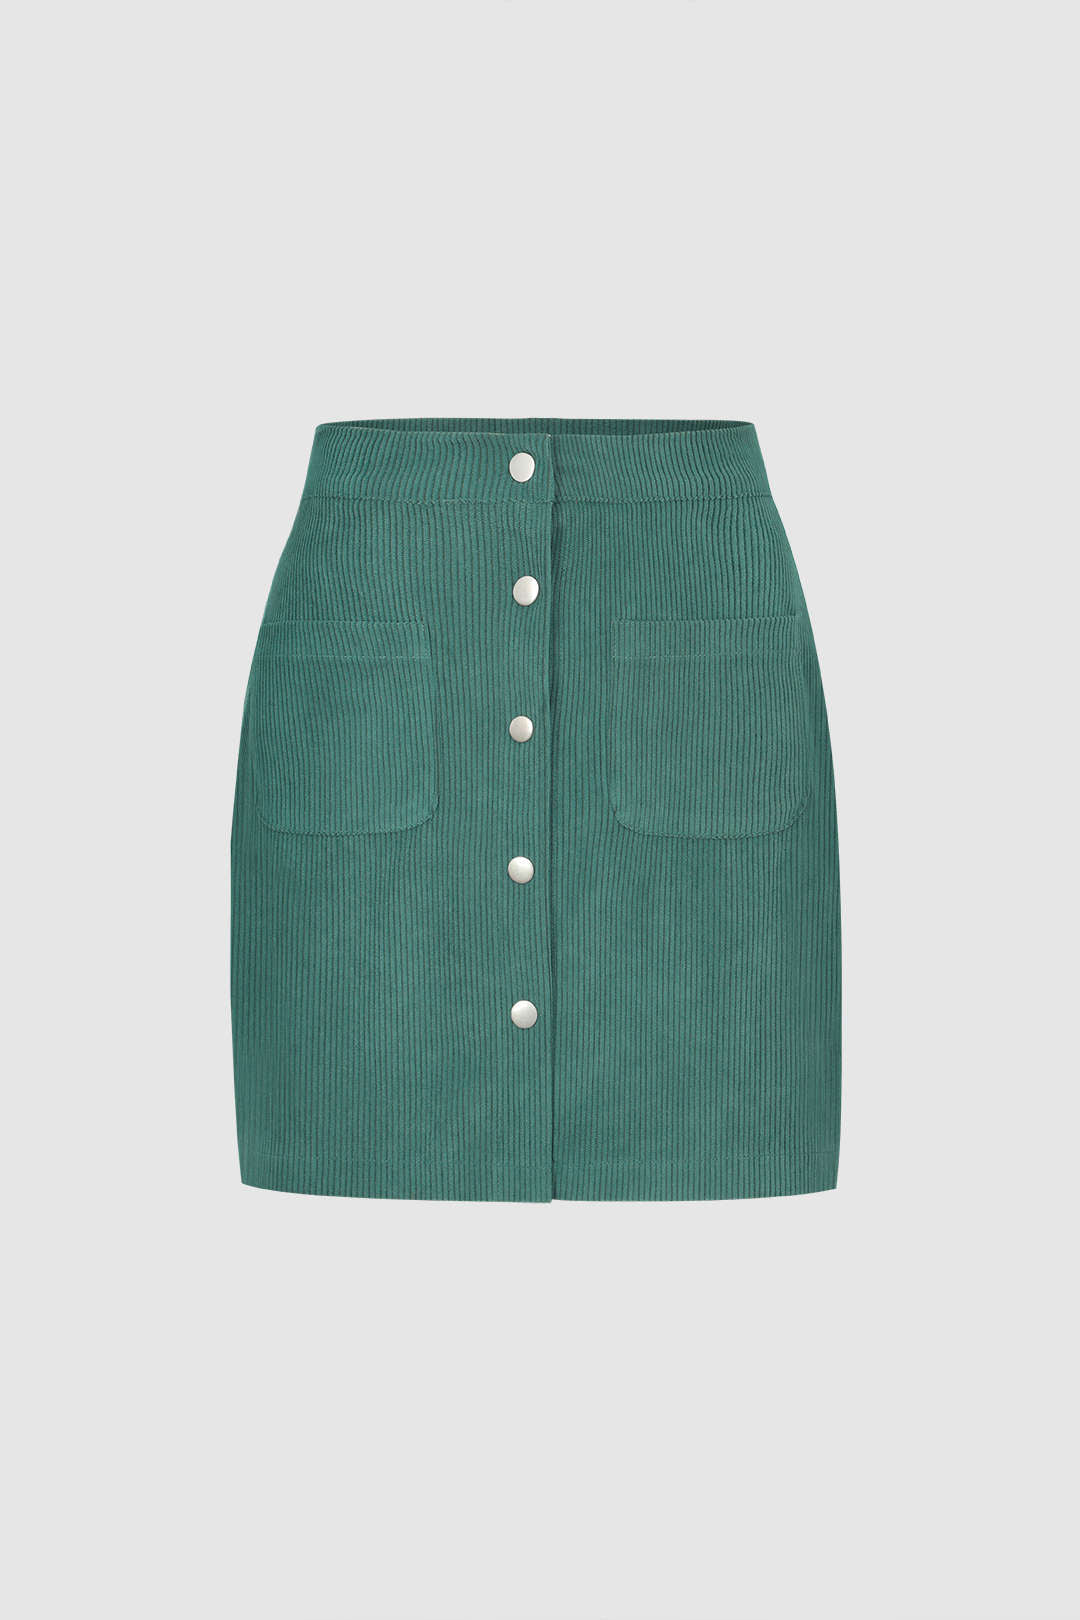 Corduroy Button Mini Skirt